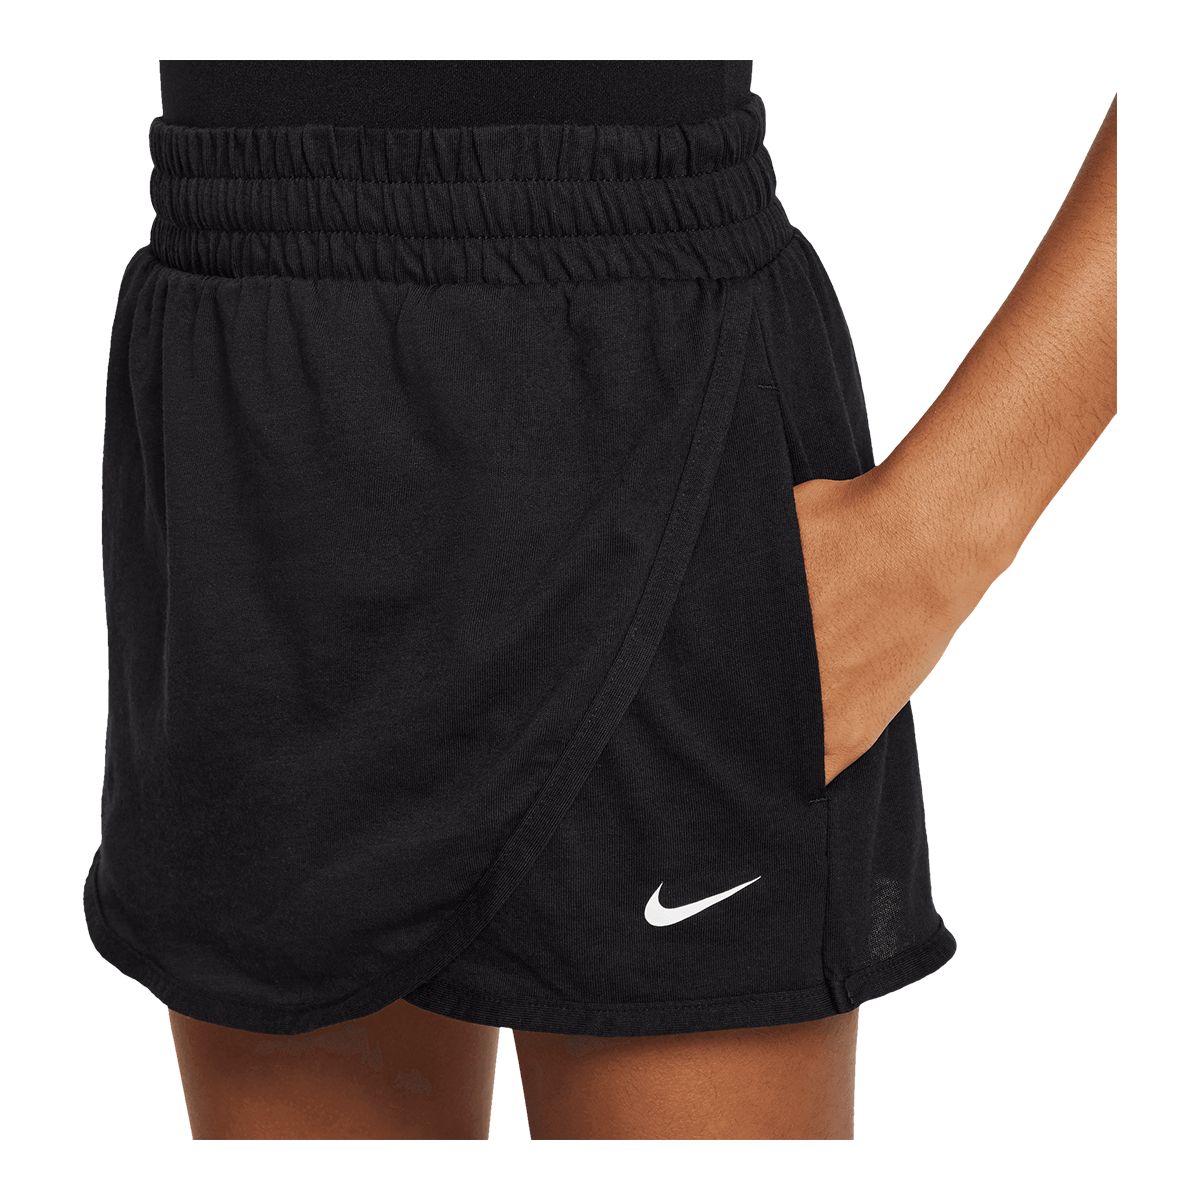 Breezy Comfy Shorts